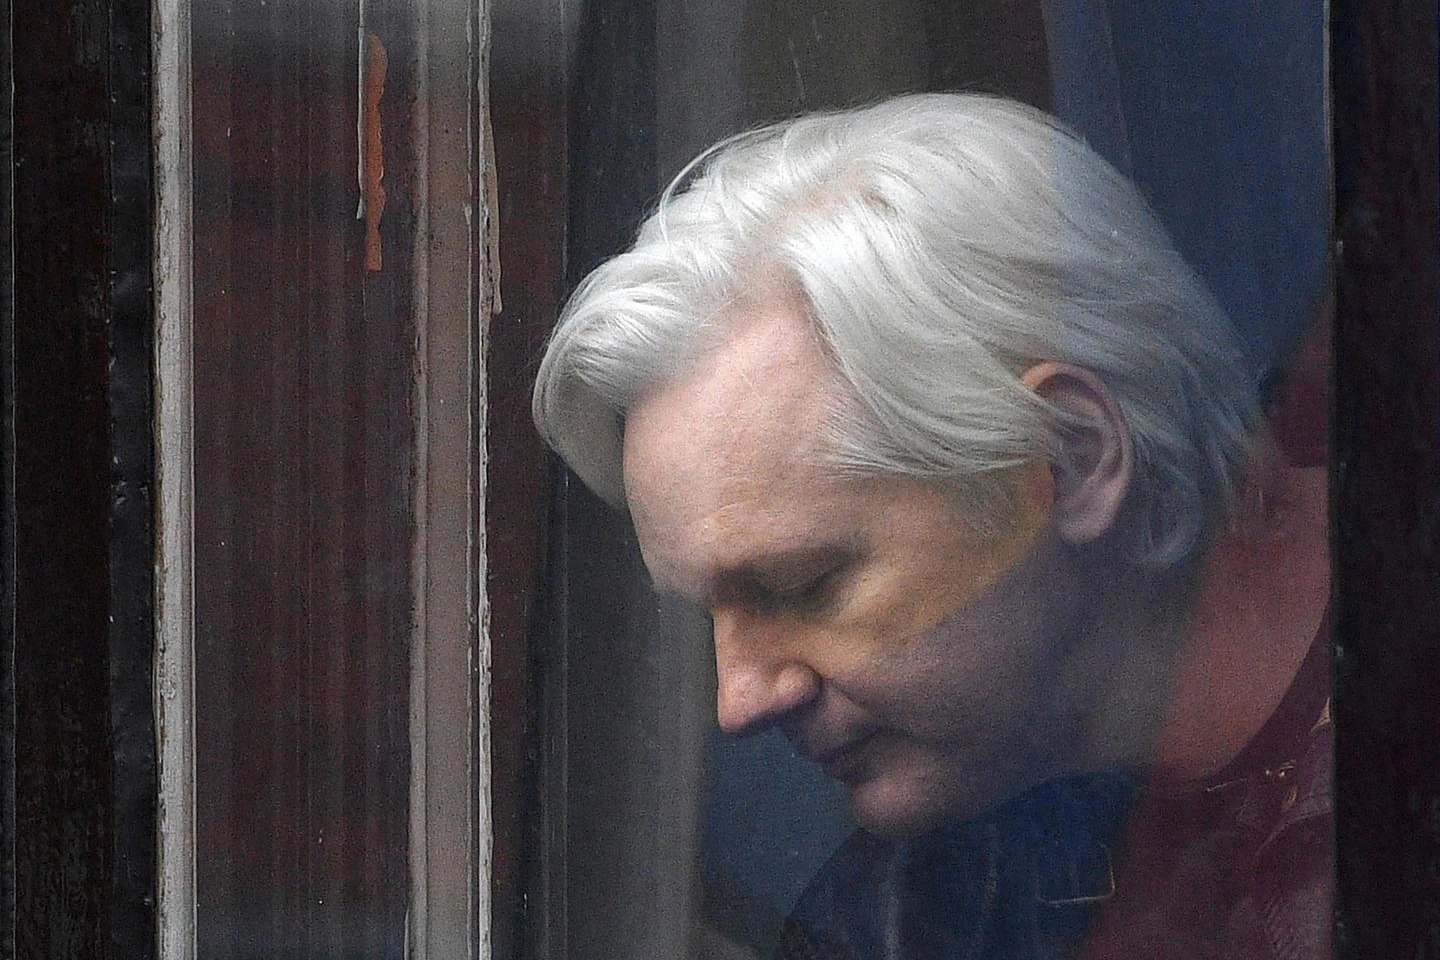 Julian Assange (Ansa)